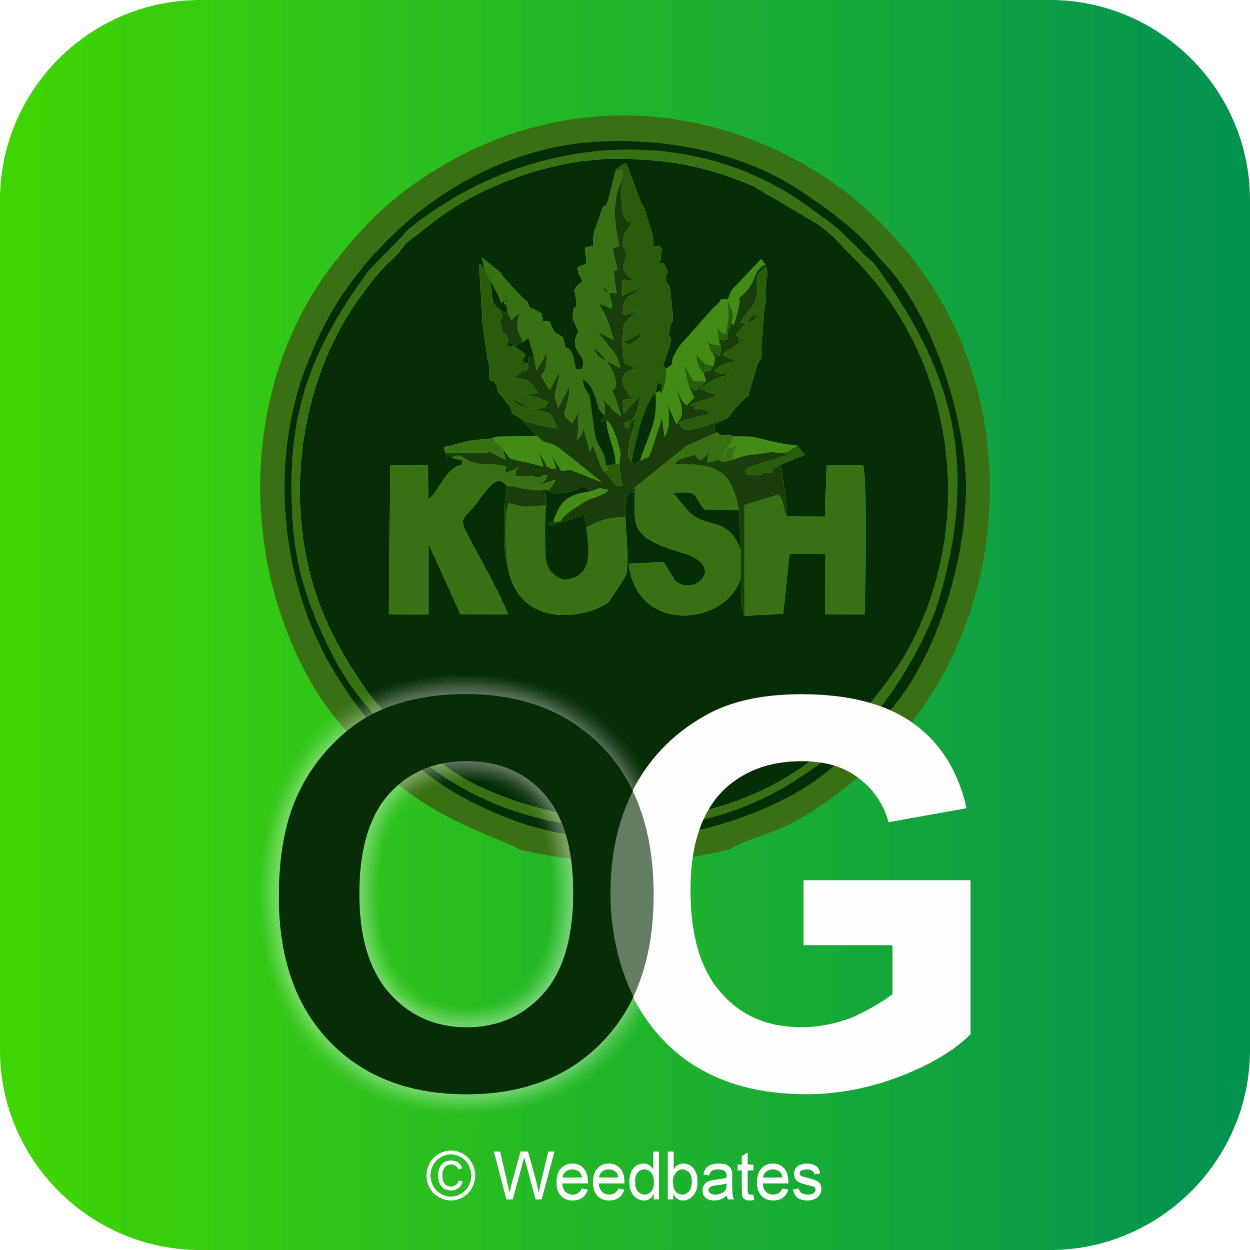 OG Kush cannabis strain